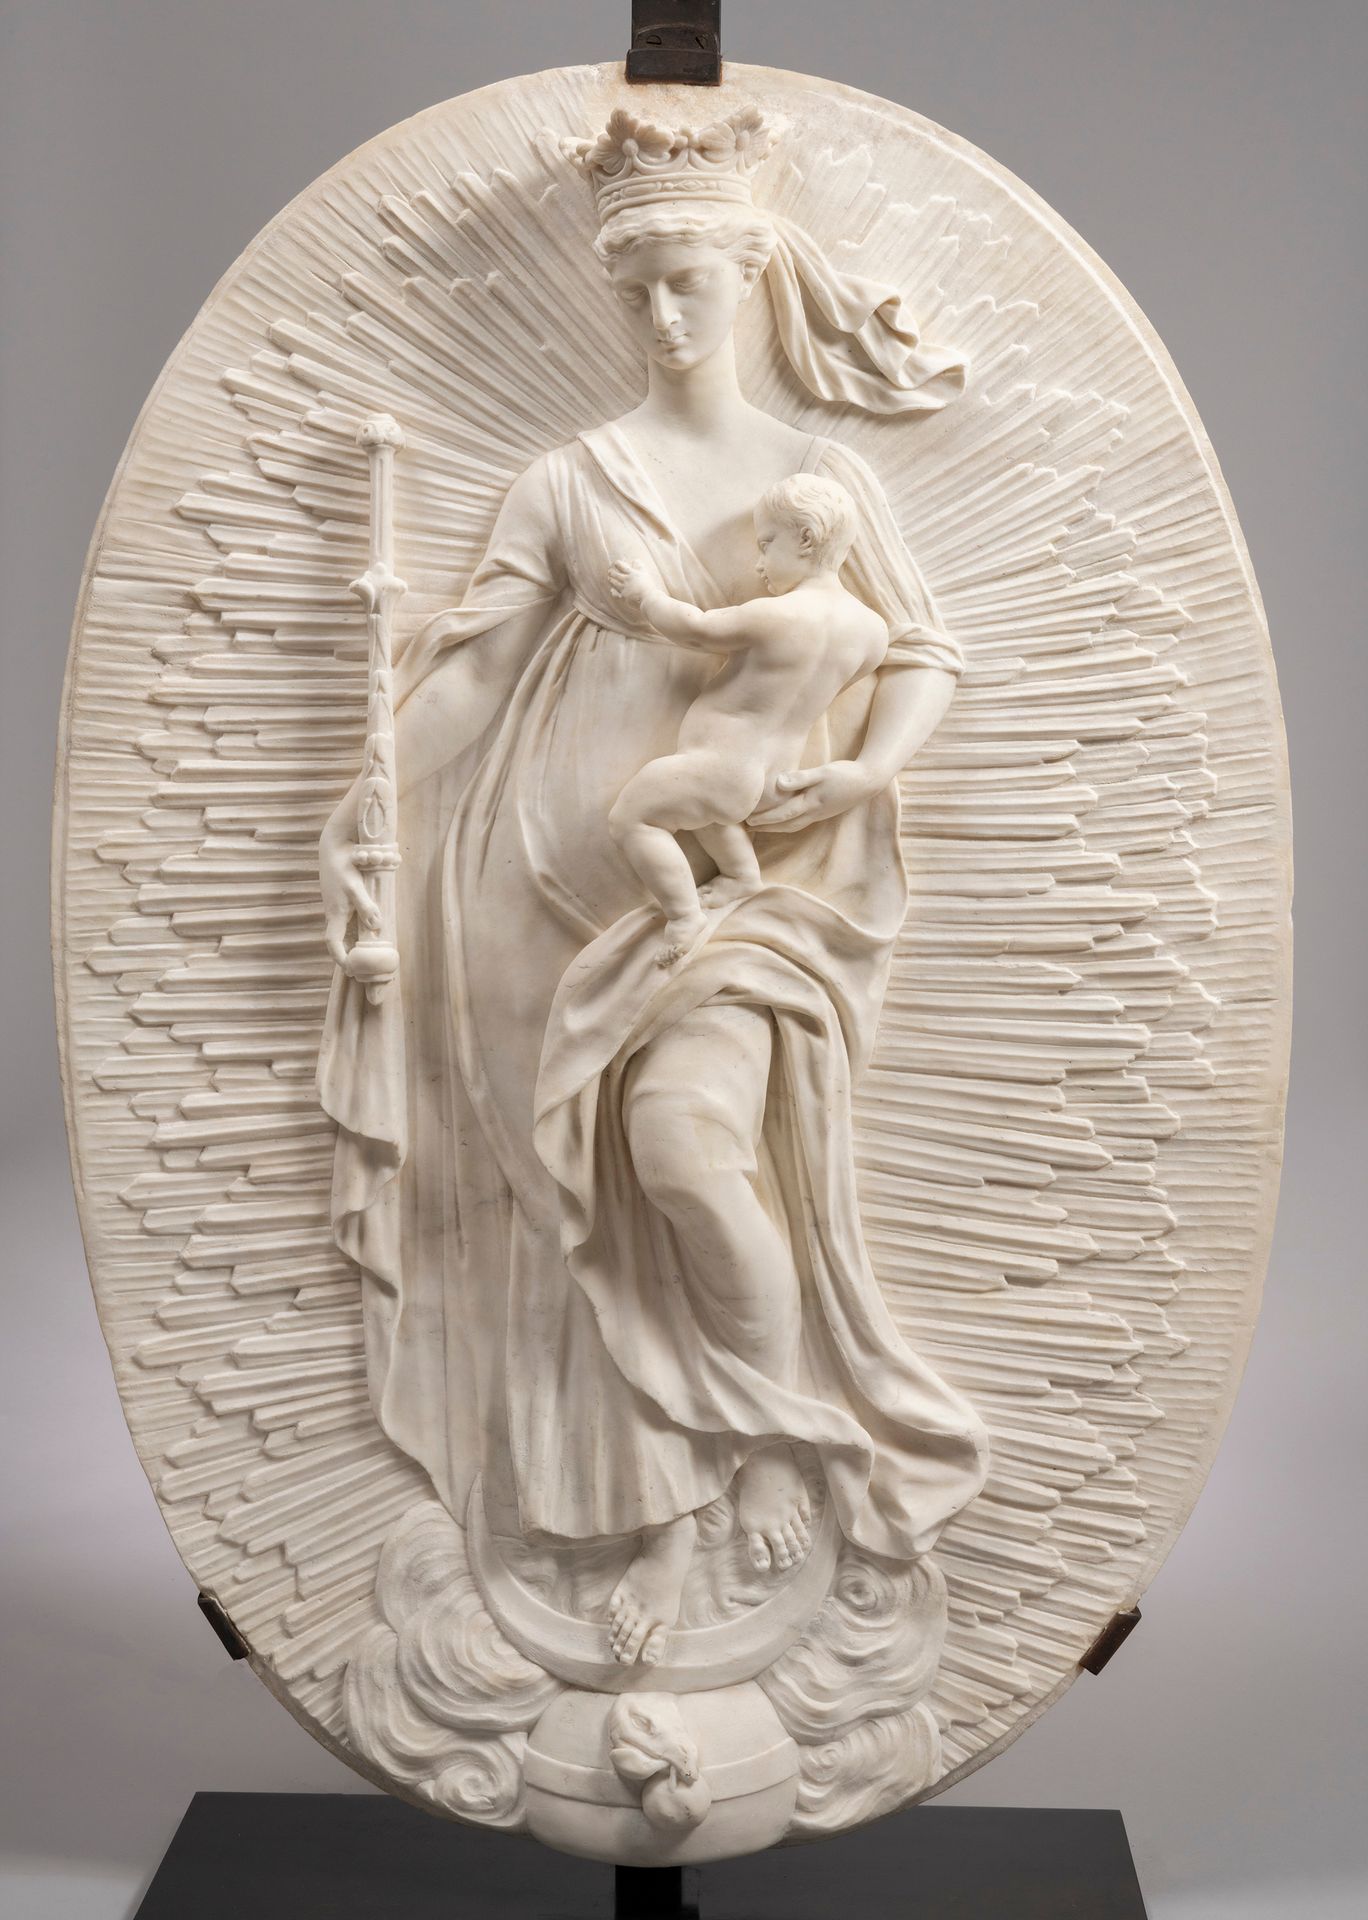 Null 佛兰德斯，17世纪中叶，圣母和儿童，被称为天启的女人

白色大理石

高100，宽70厘米